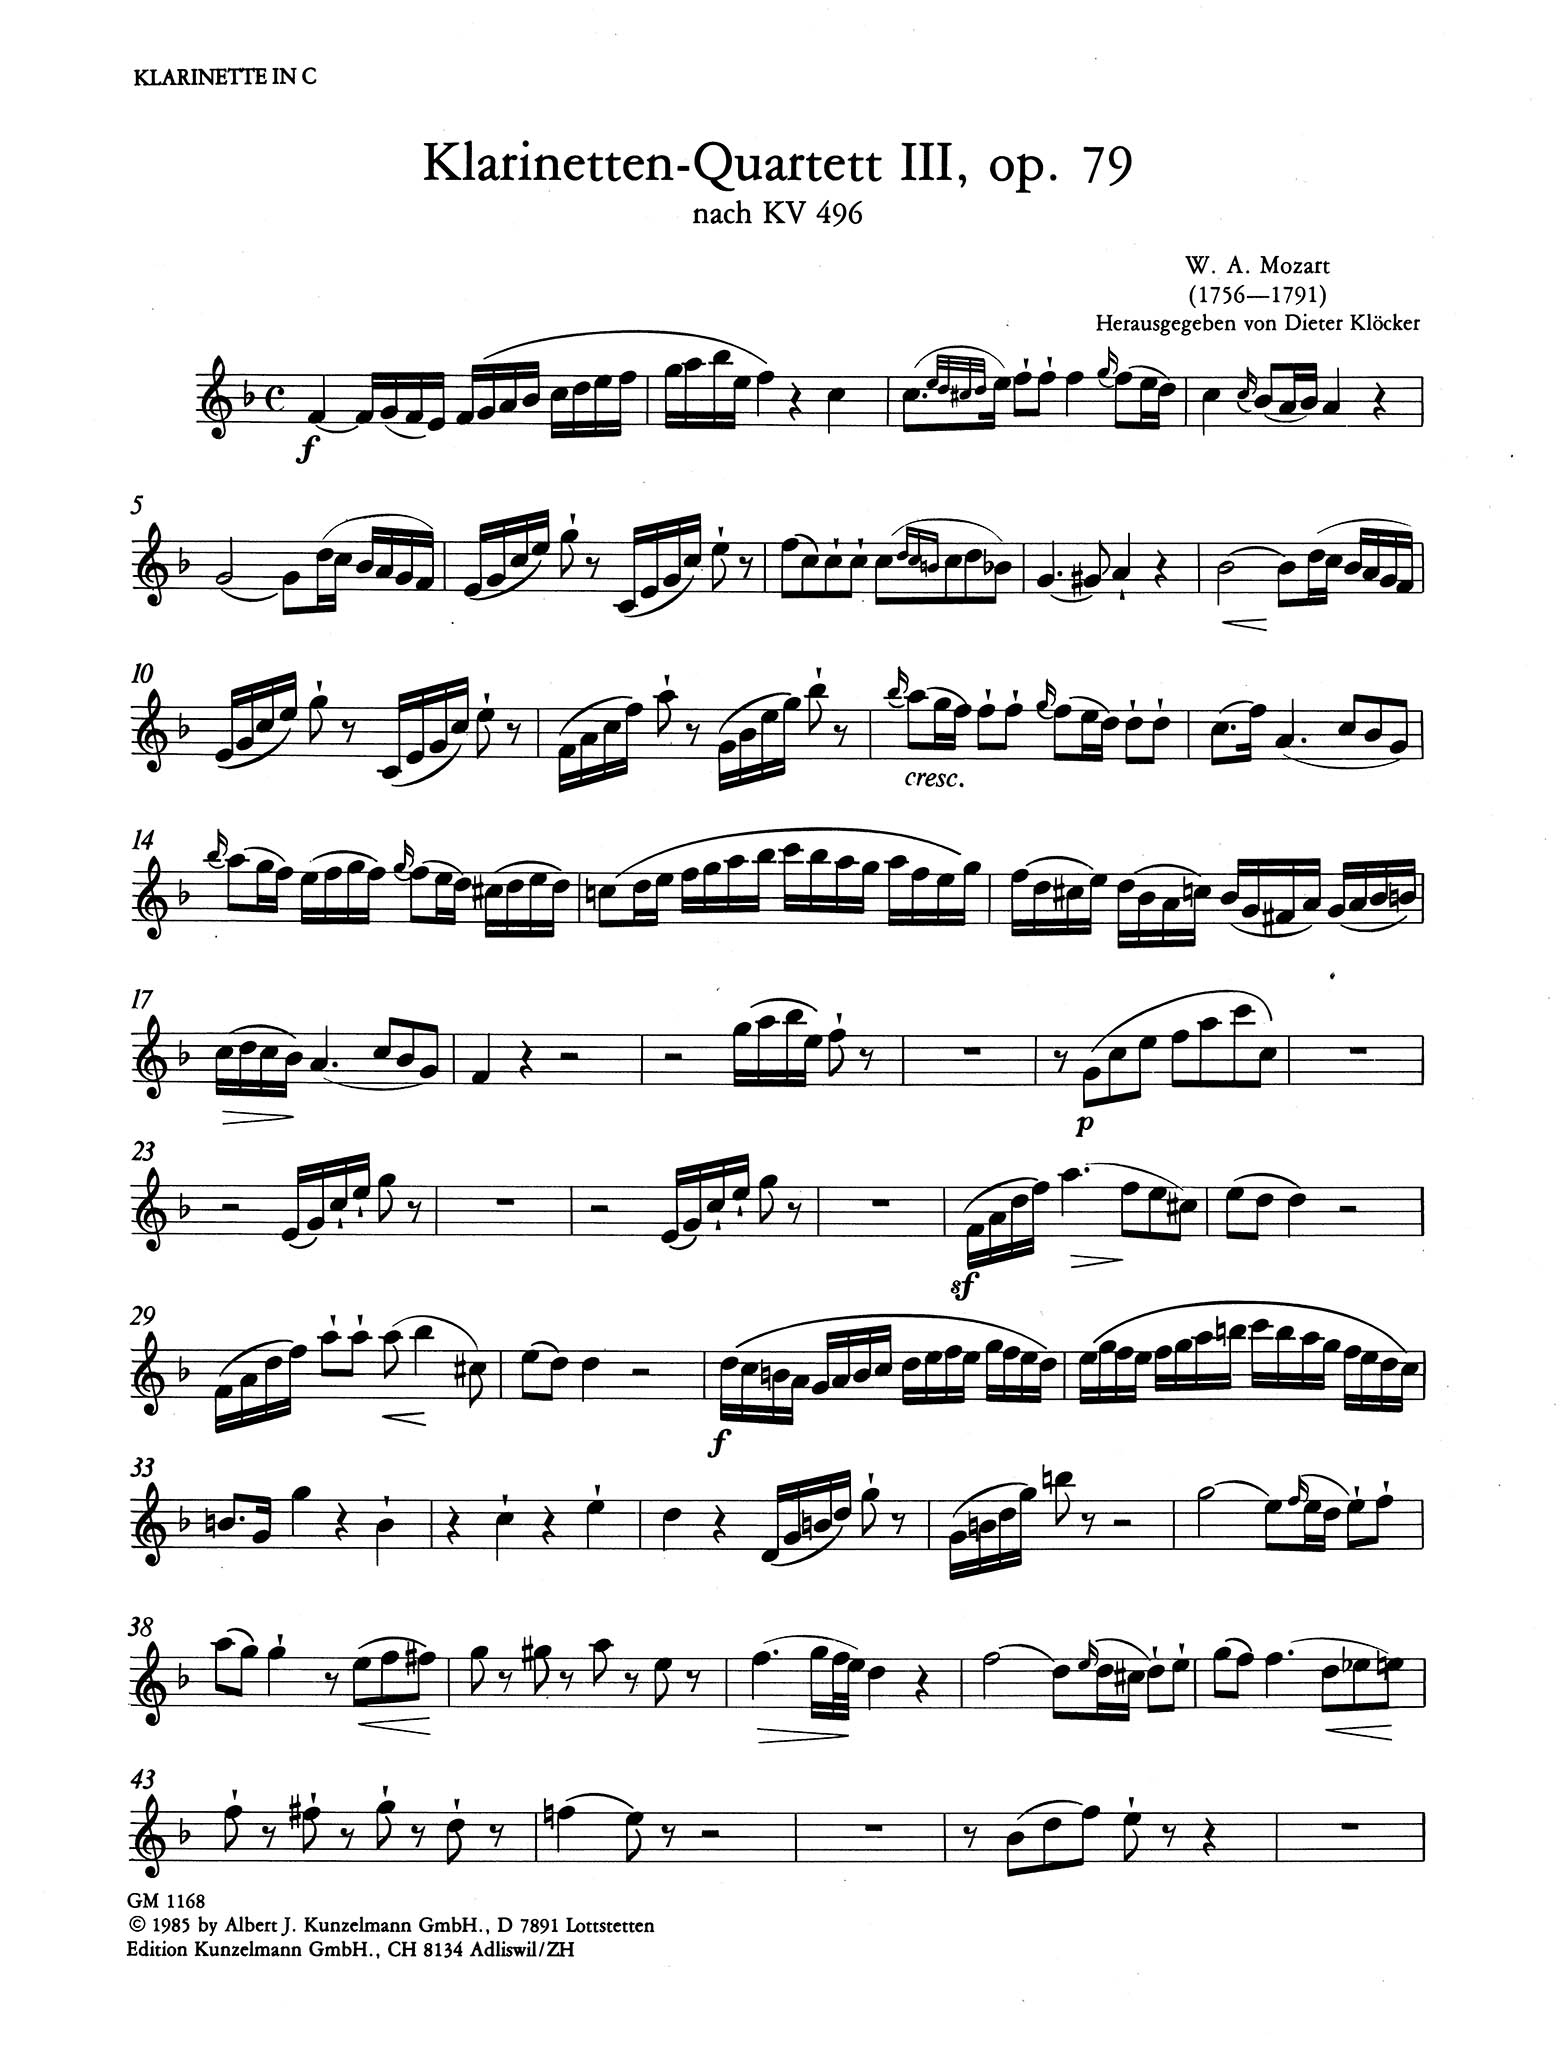 Piano Trio No. 1 in G Major, K. 496 Clarinet part